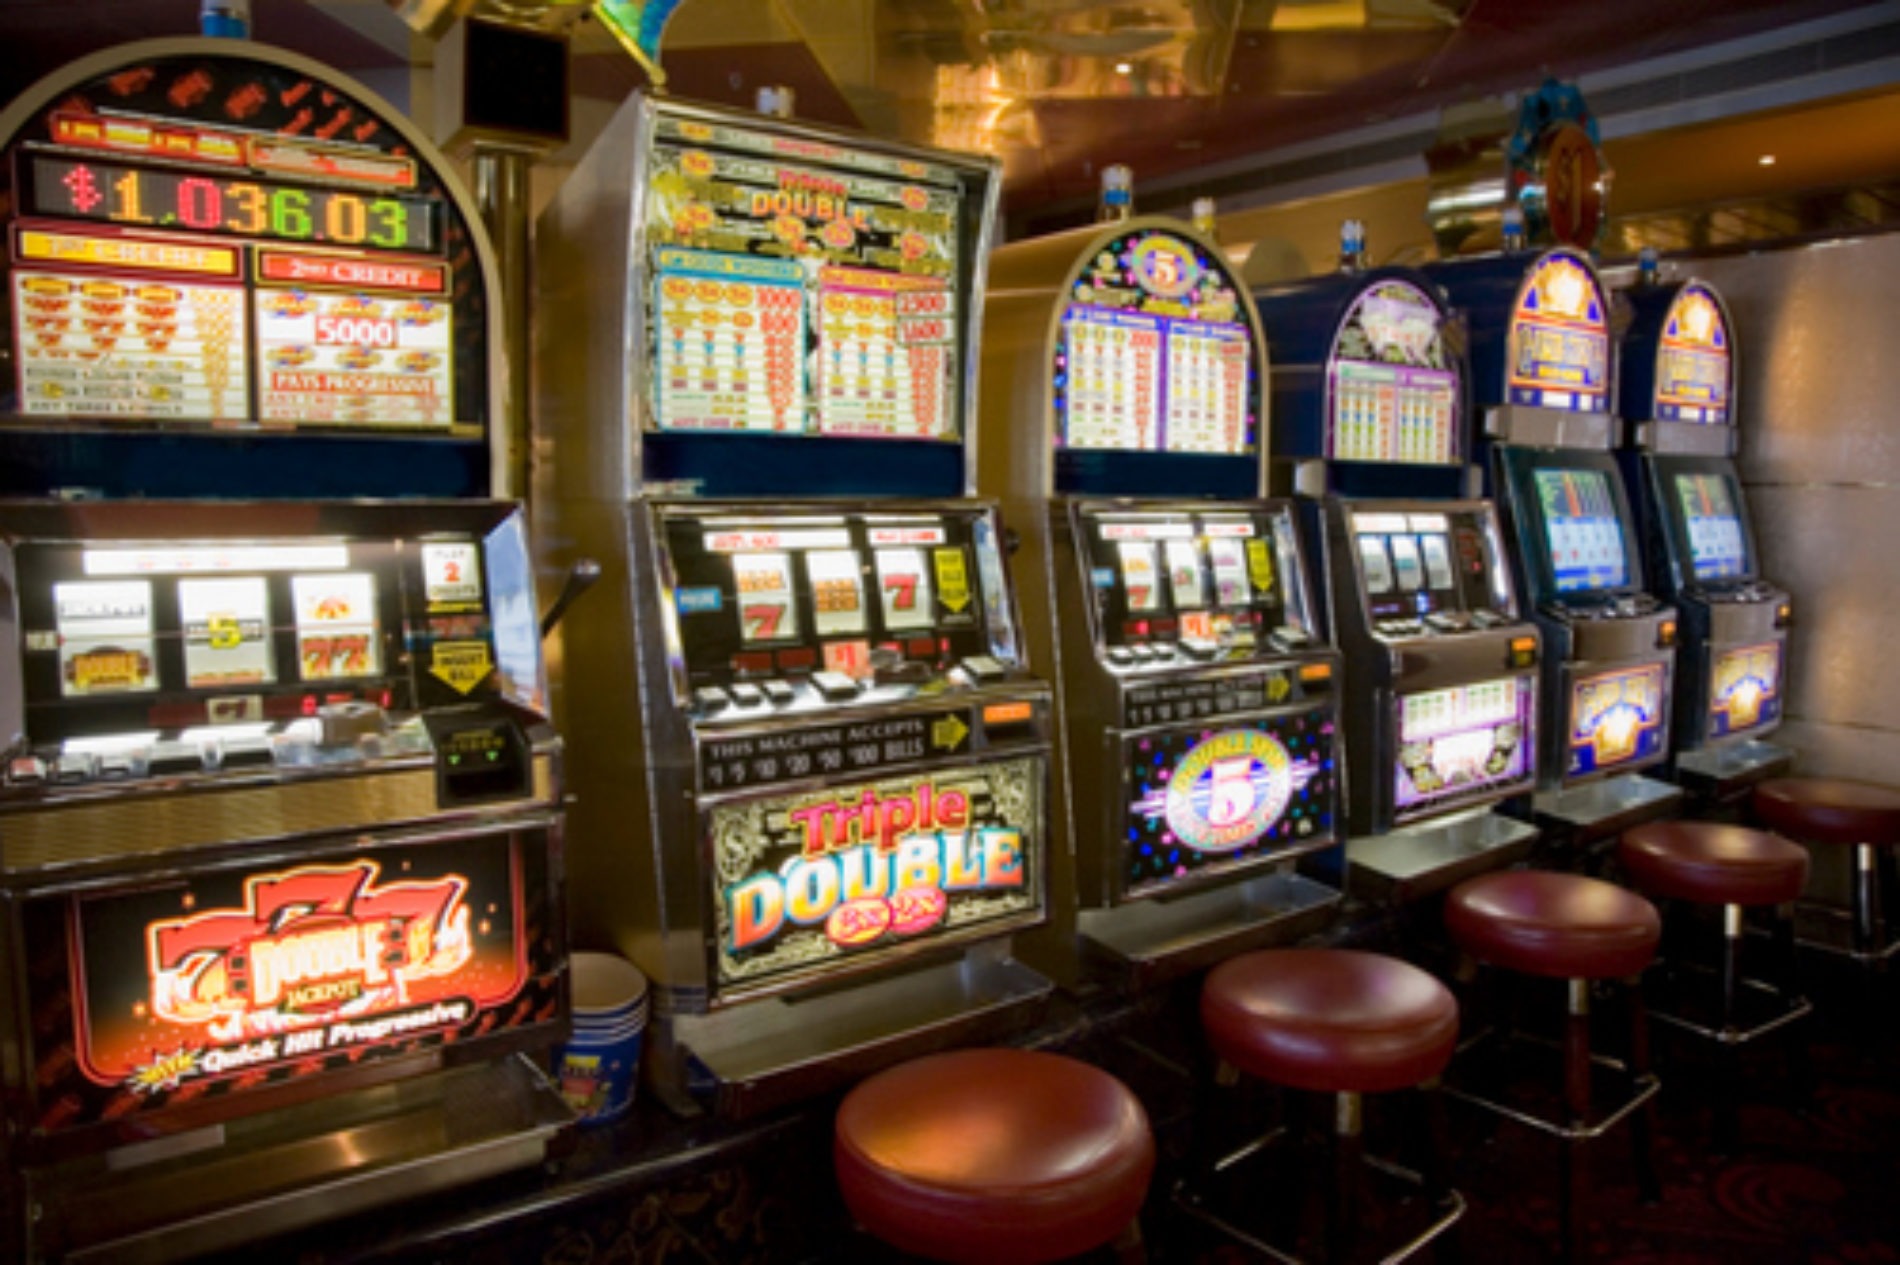 Furto di Slot Machine nella notte in un noto locale in Viale della Repubblica